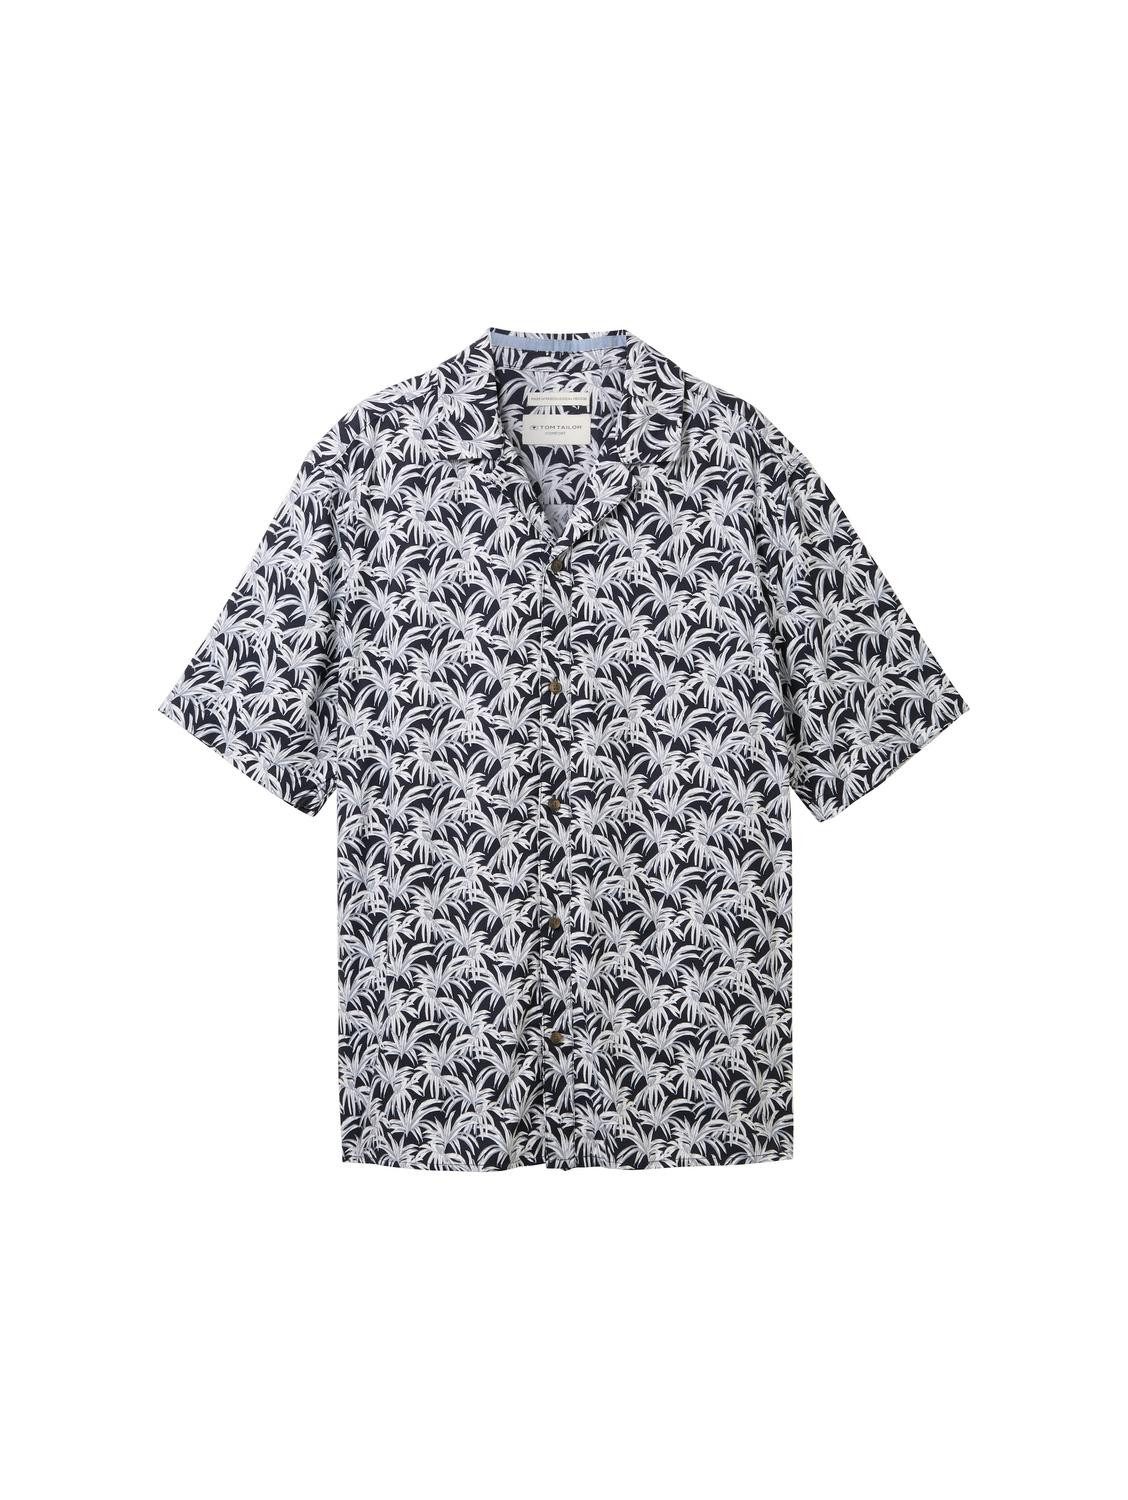 TOM TAILOR T-Shirt comfort printed viscose shirt, navy coloured leaf design